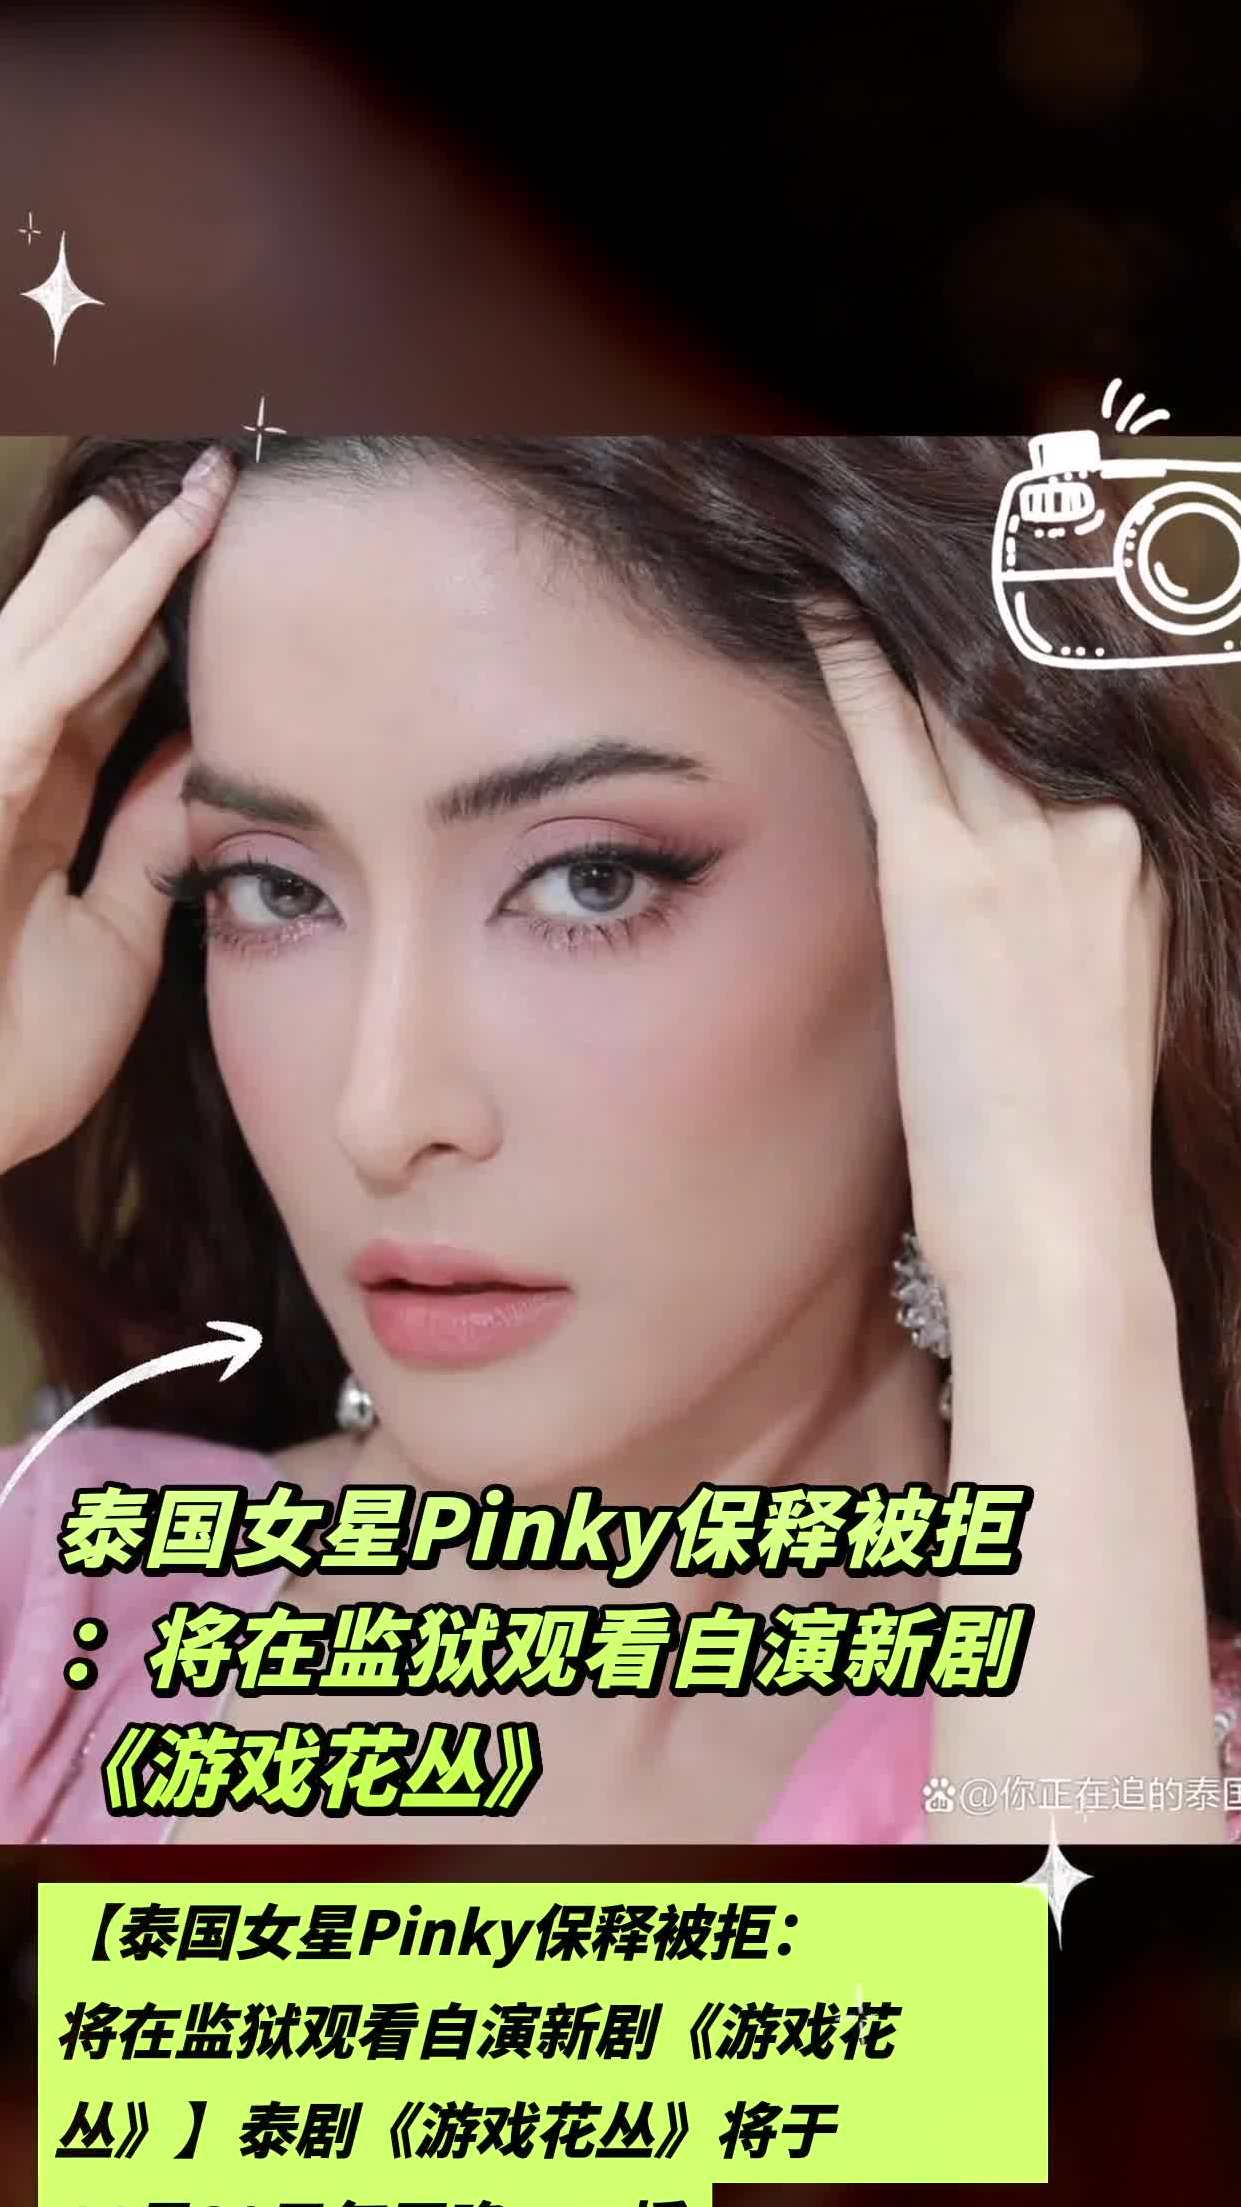 泰国女星pinky保释被拒:将在监狱观看自演新剧《游戏花丛》